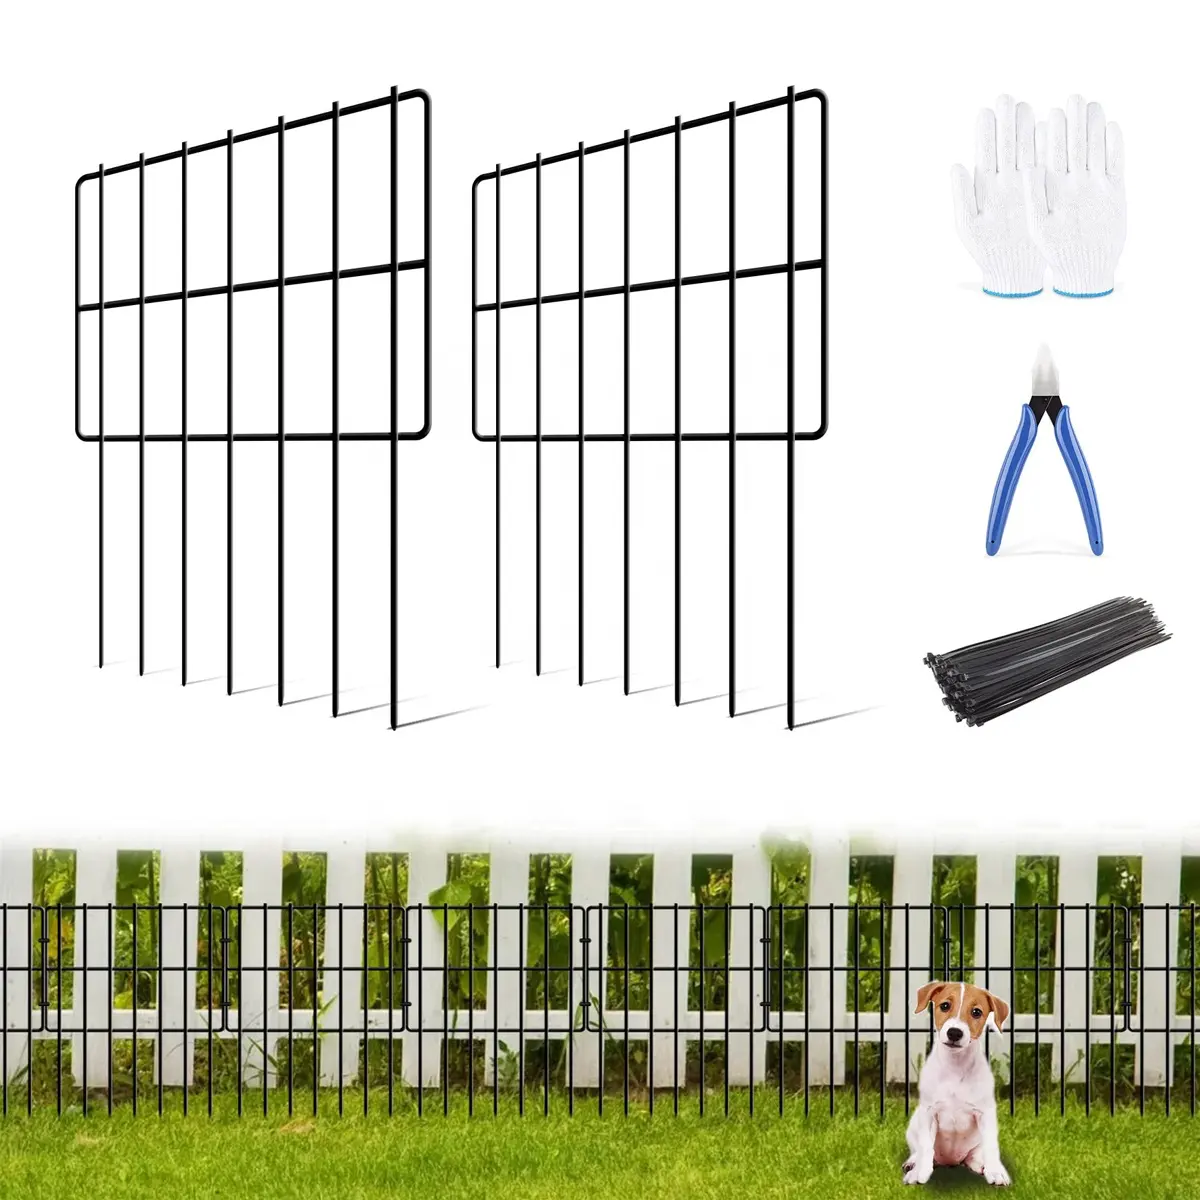 アニマルバリアフェンス、20.6フィート (L) X 17インチ (H) ディグガーデン装飾フェンス防錆ガーデンフェンスボーダーなし